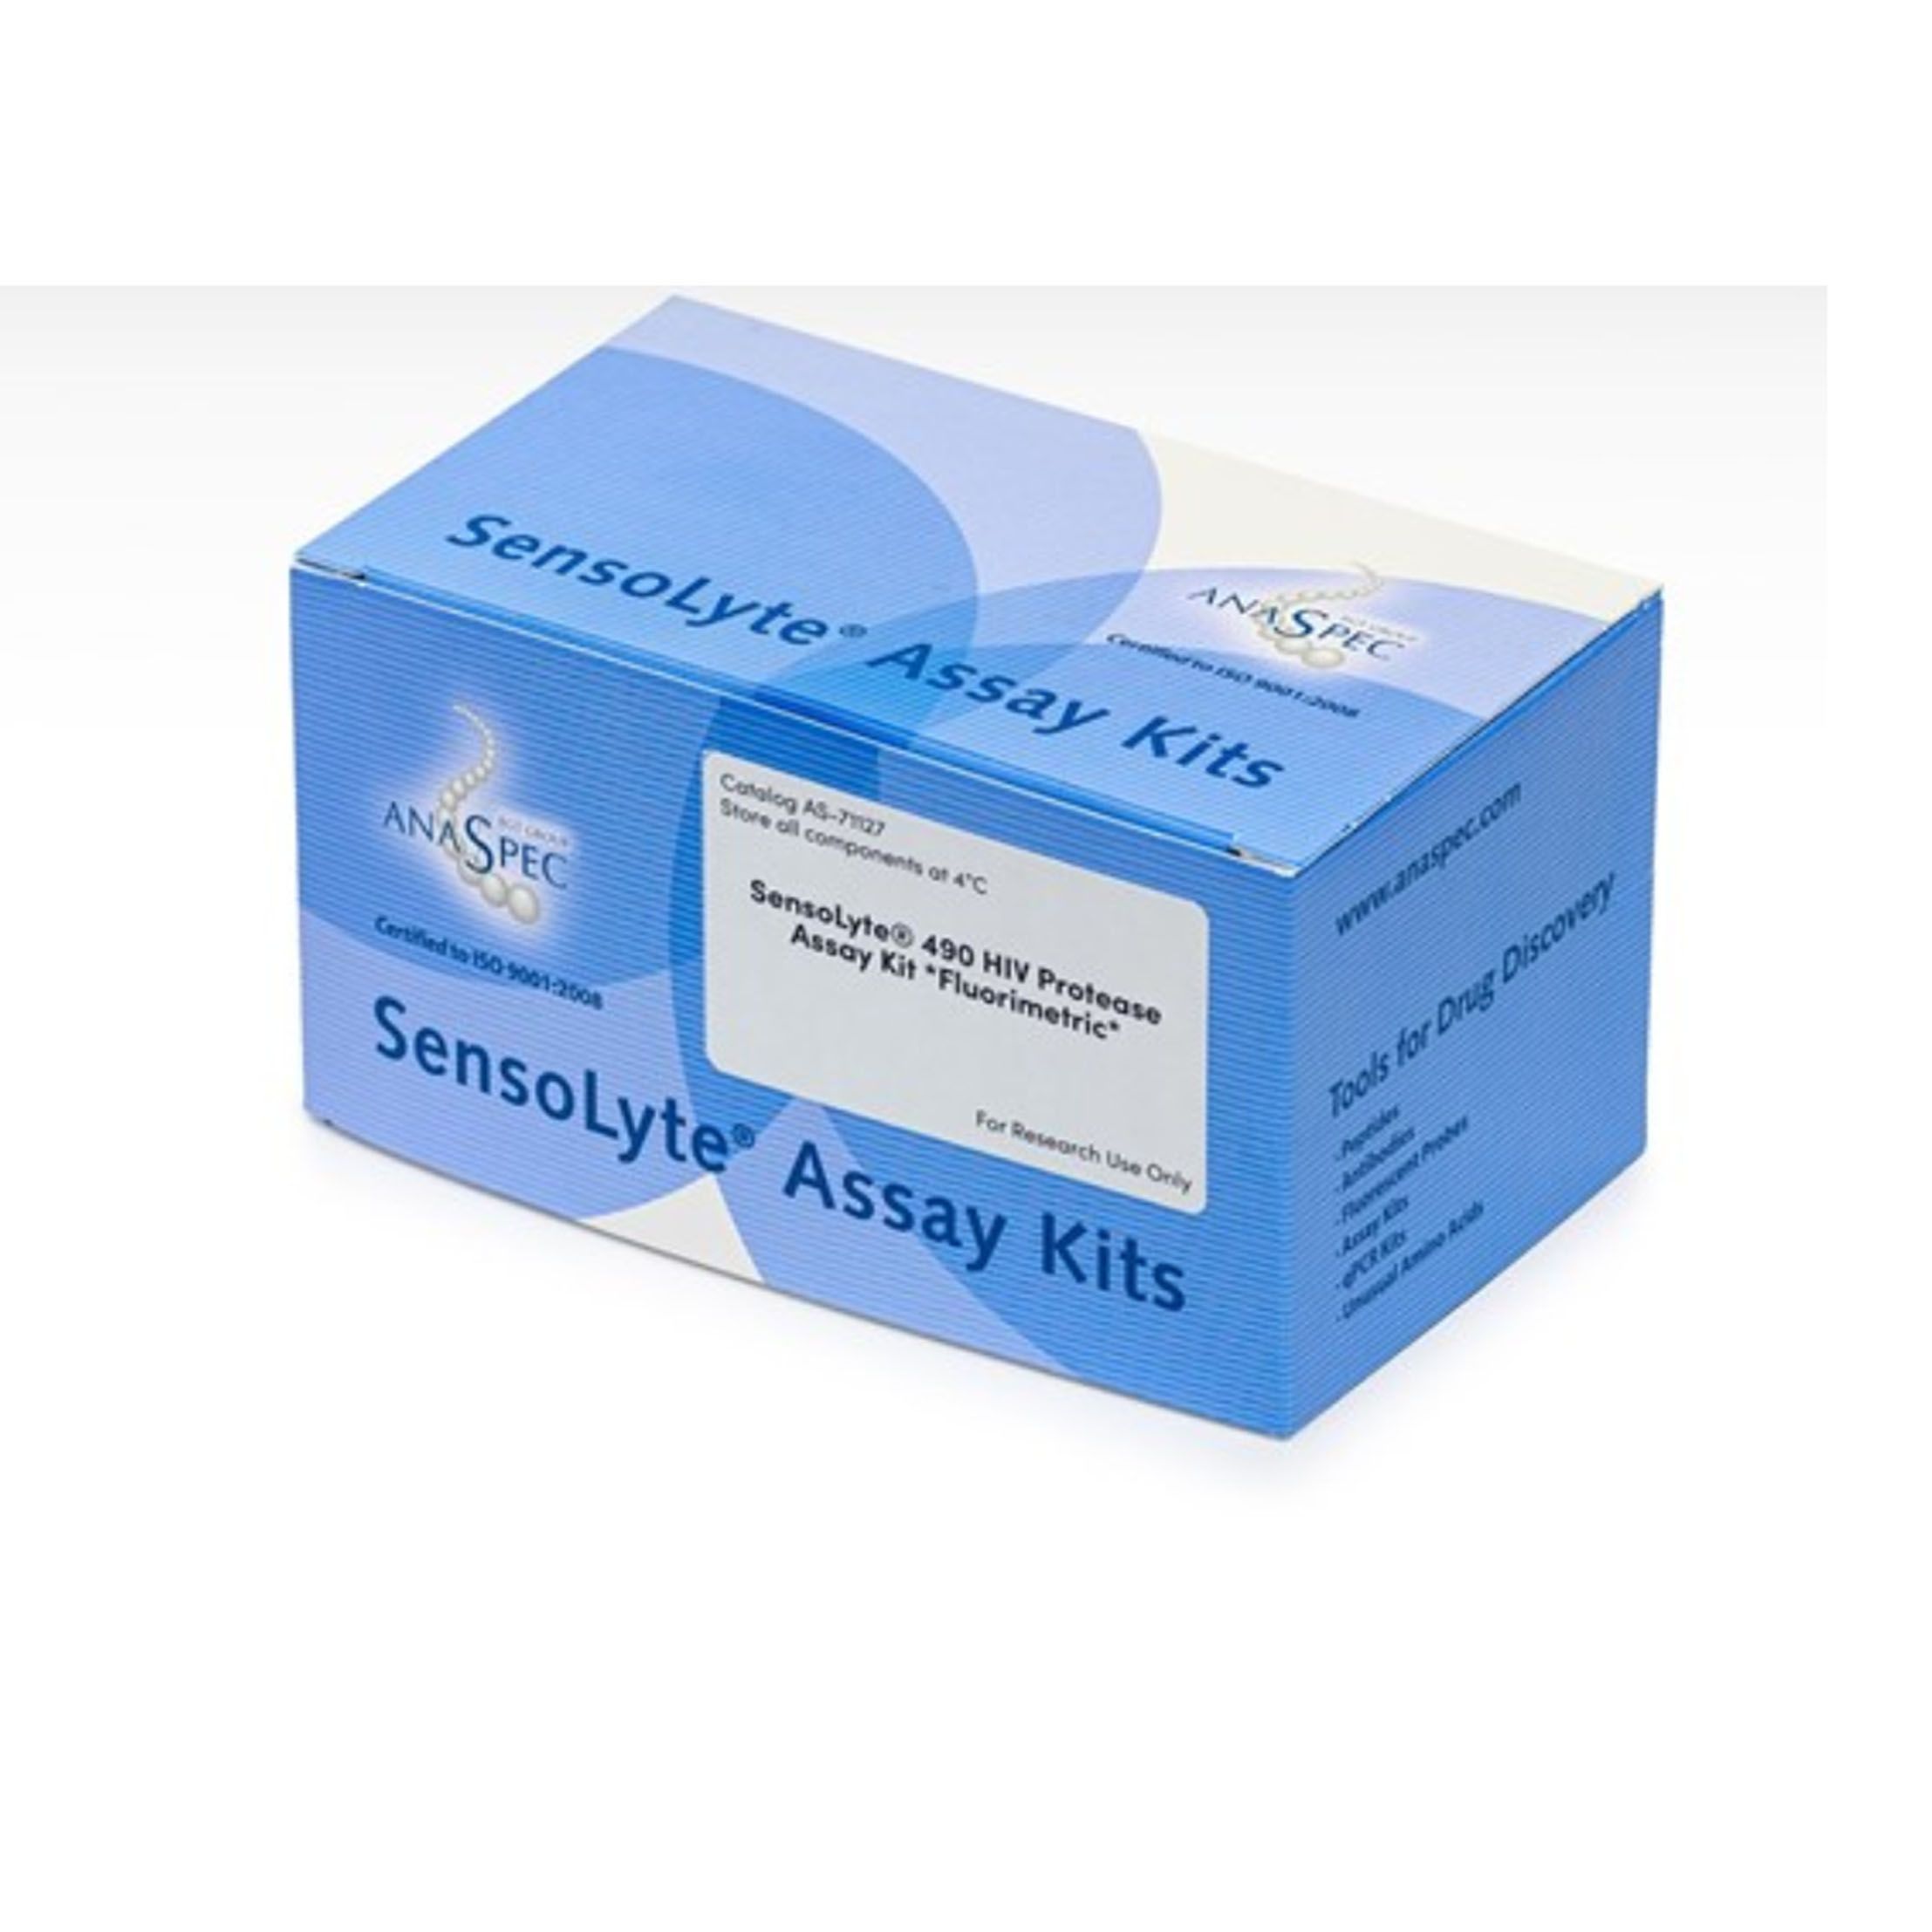 AnaSpecAS-71127SensoLyte®490 HIV蛋白酶检测试剂盒荧光法-1试剂盒，SensoLyte® 490 HIV Protease Assay Kit Fluorimetric - 1 kit